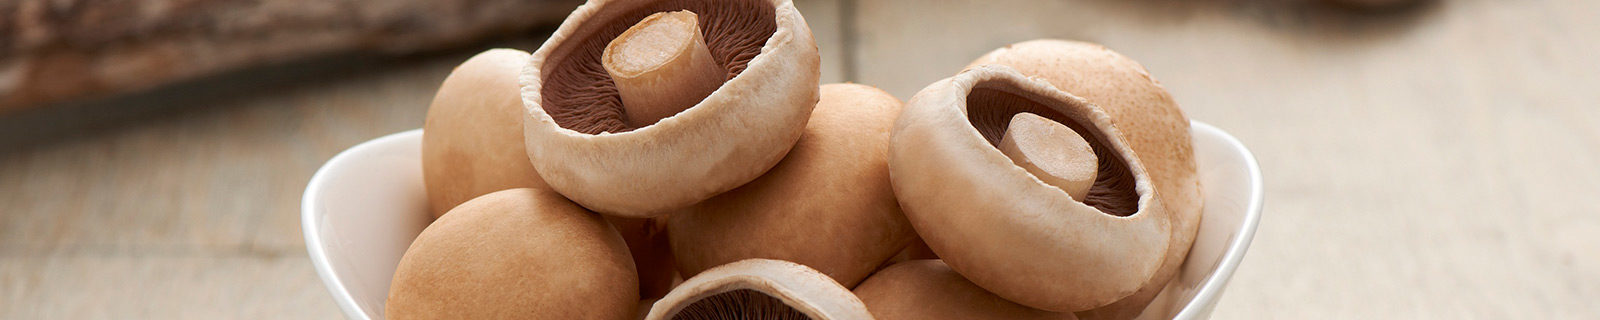 Monaghan bowl of mushrooms